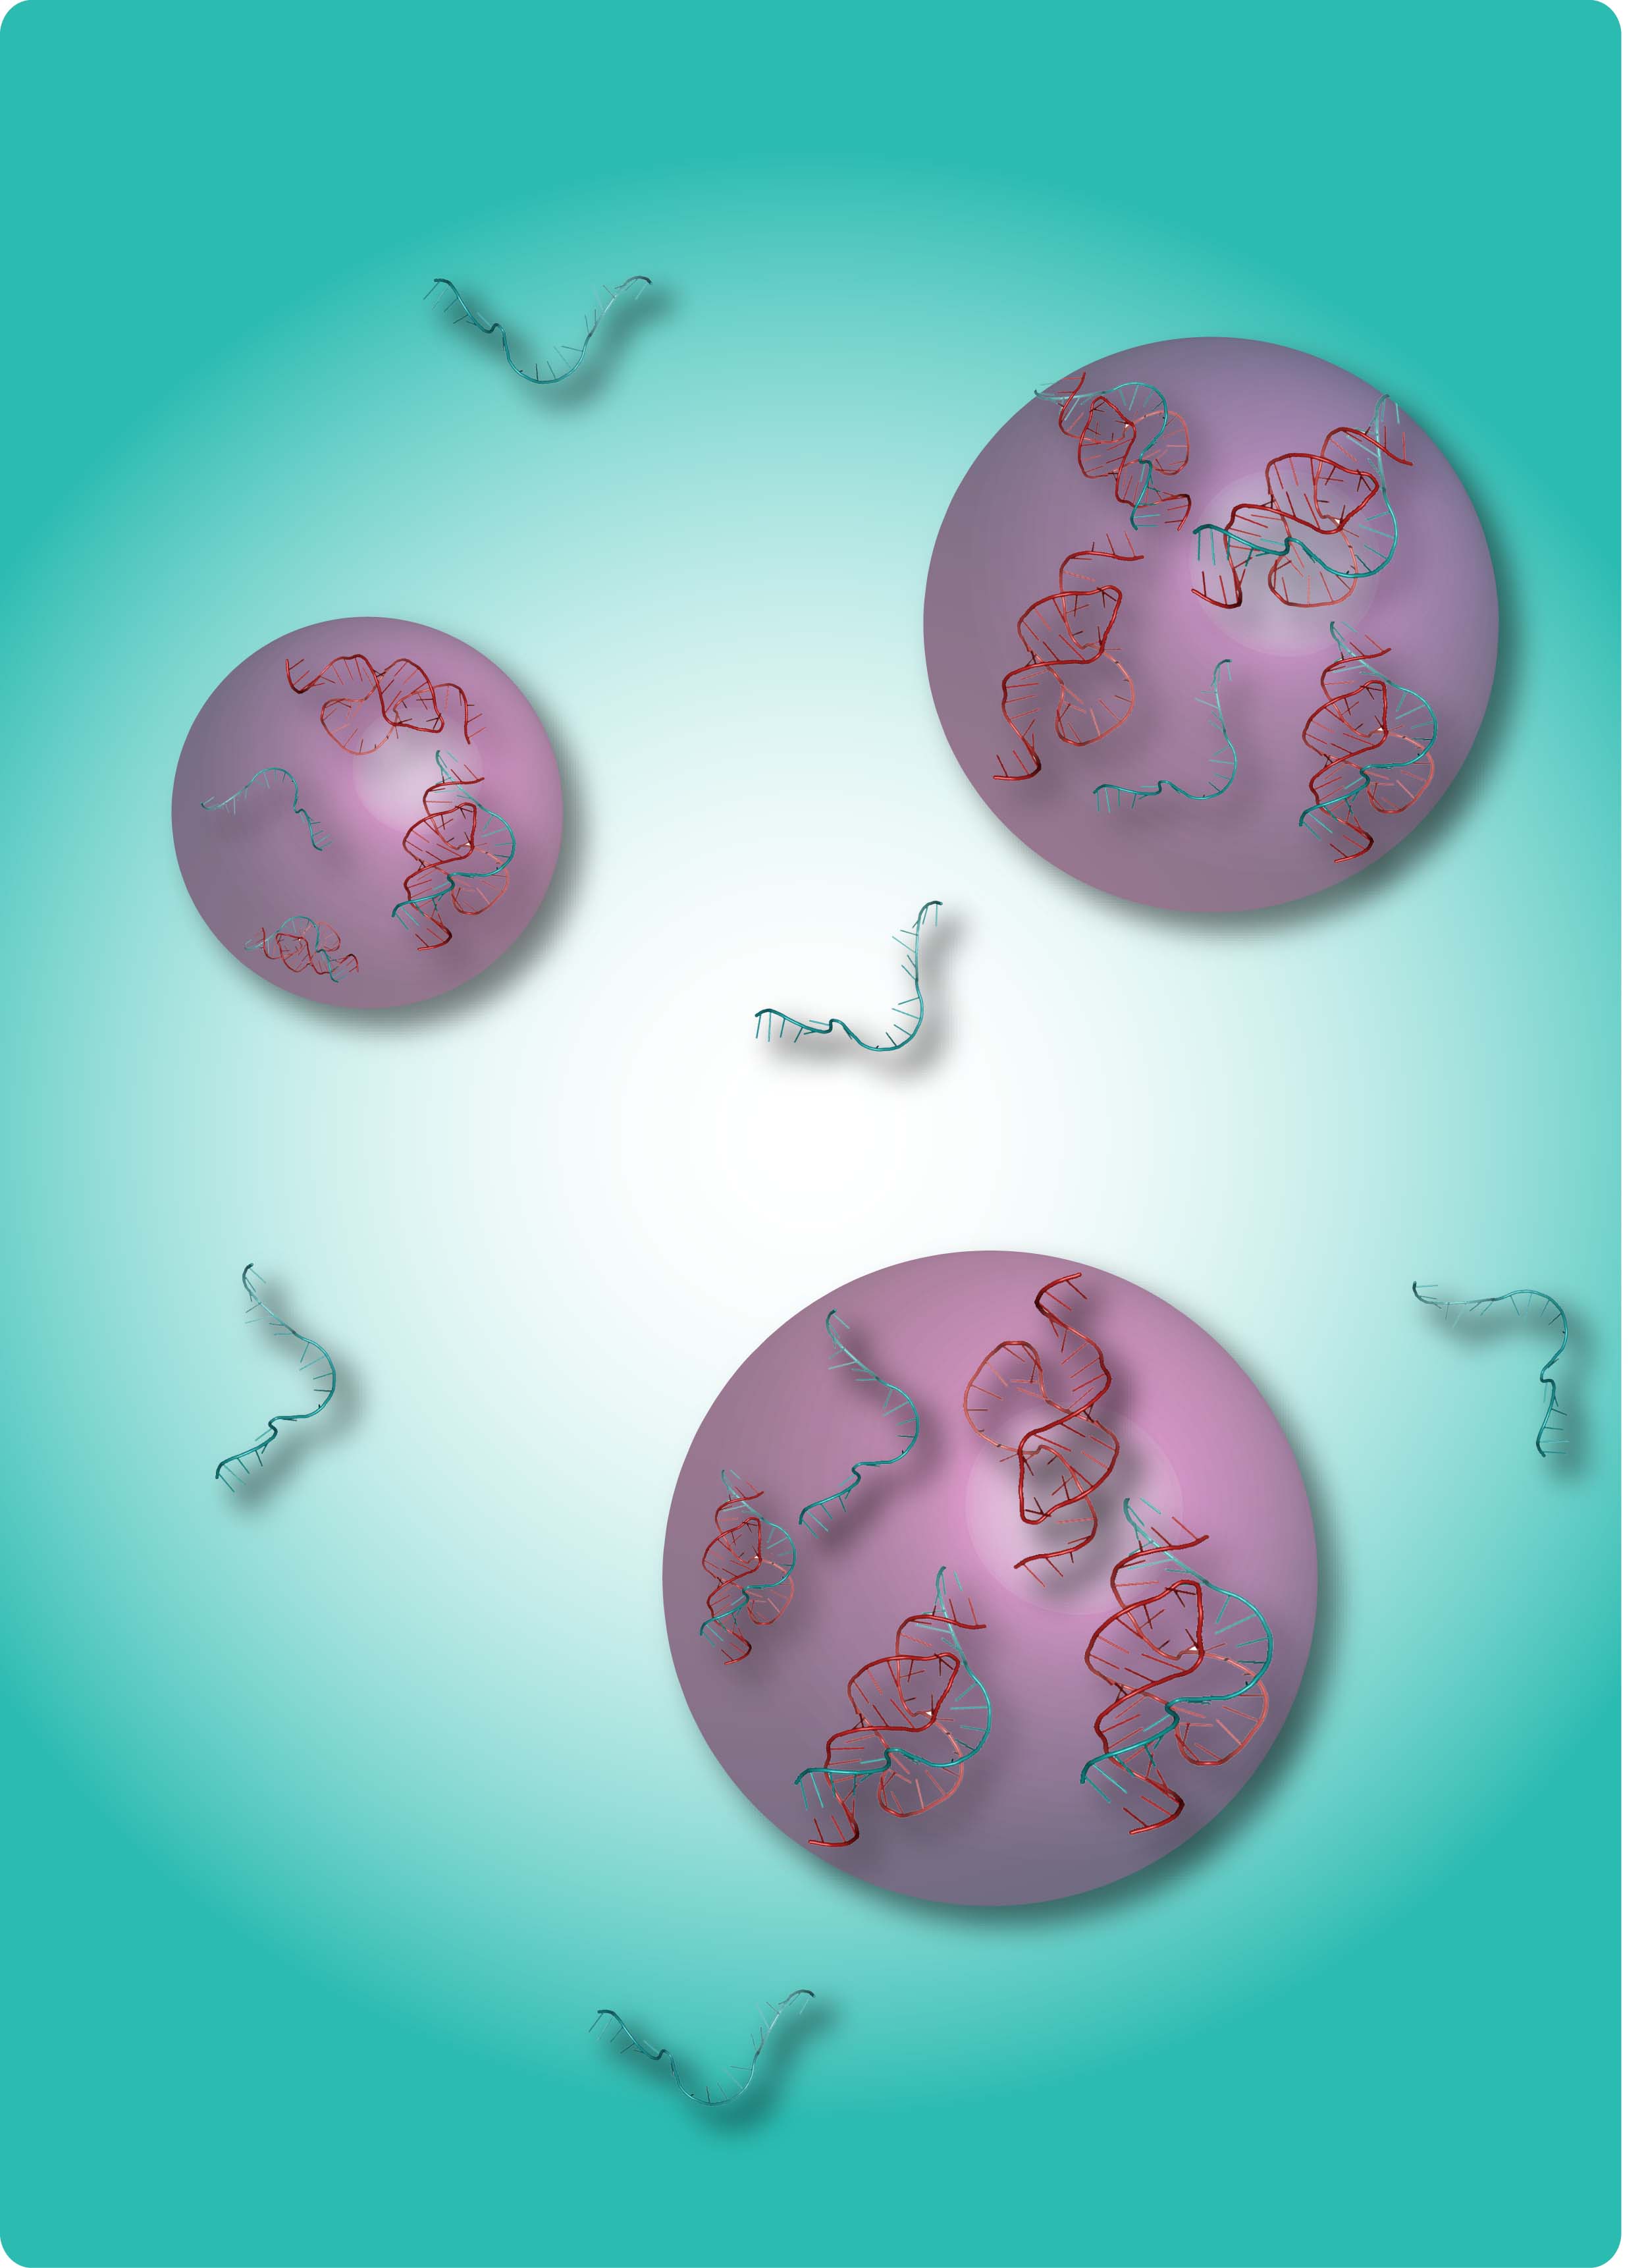 Sous certaines conditions, du dextrane mis en solution aqueuse a pu former des sphères et capturer de l'ARN à l'intérieur (filament bleu). Les molécules d'acide ribonucléique de grandes tailles (les petites étant restées à l'extérieur)&nbsp;ont alors pu interagir (avec les filaments rouges notamment). Ce mécanisme récréé en laboratoire pourrait être à l'origine de la vie...&nbsp;©&nbsp;C.-A. Strulson